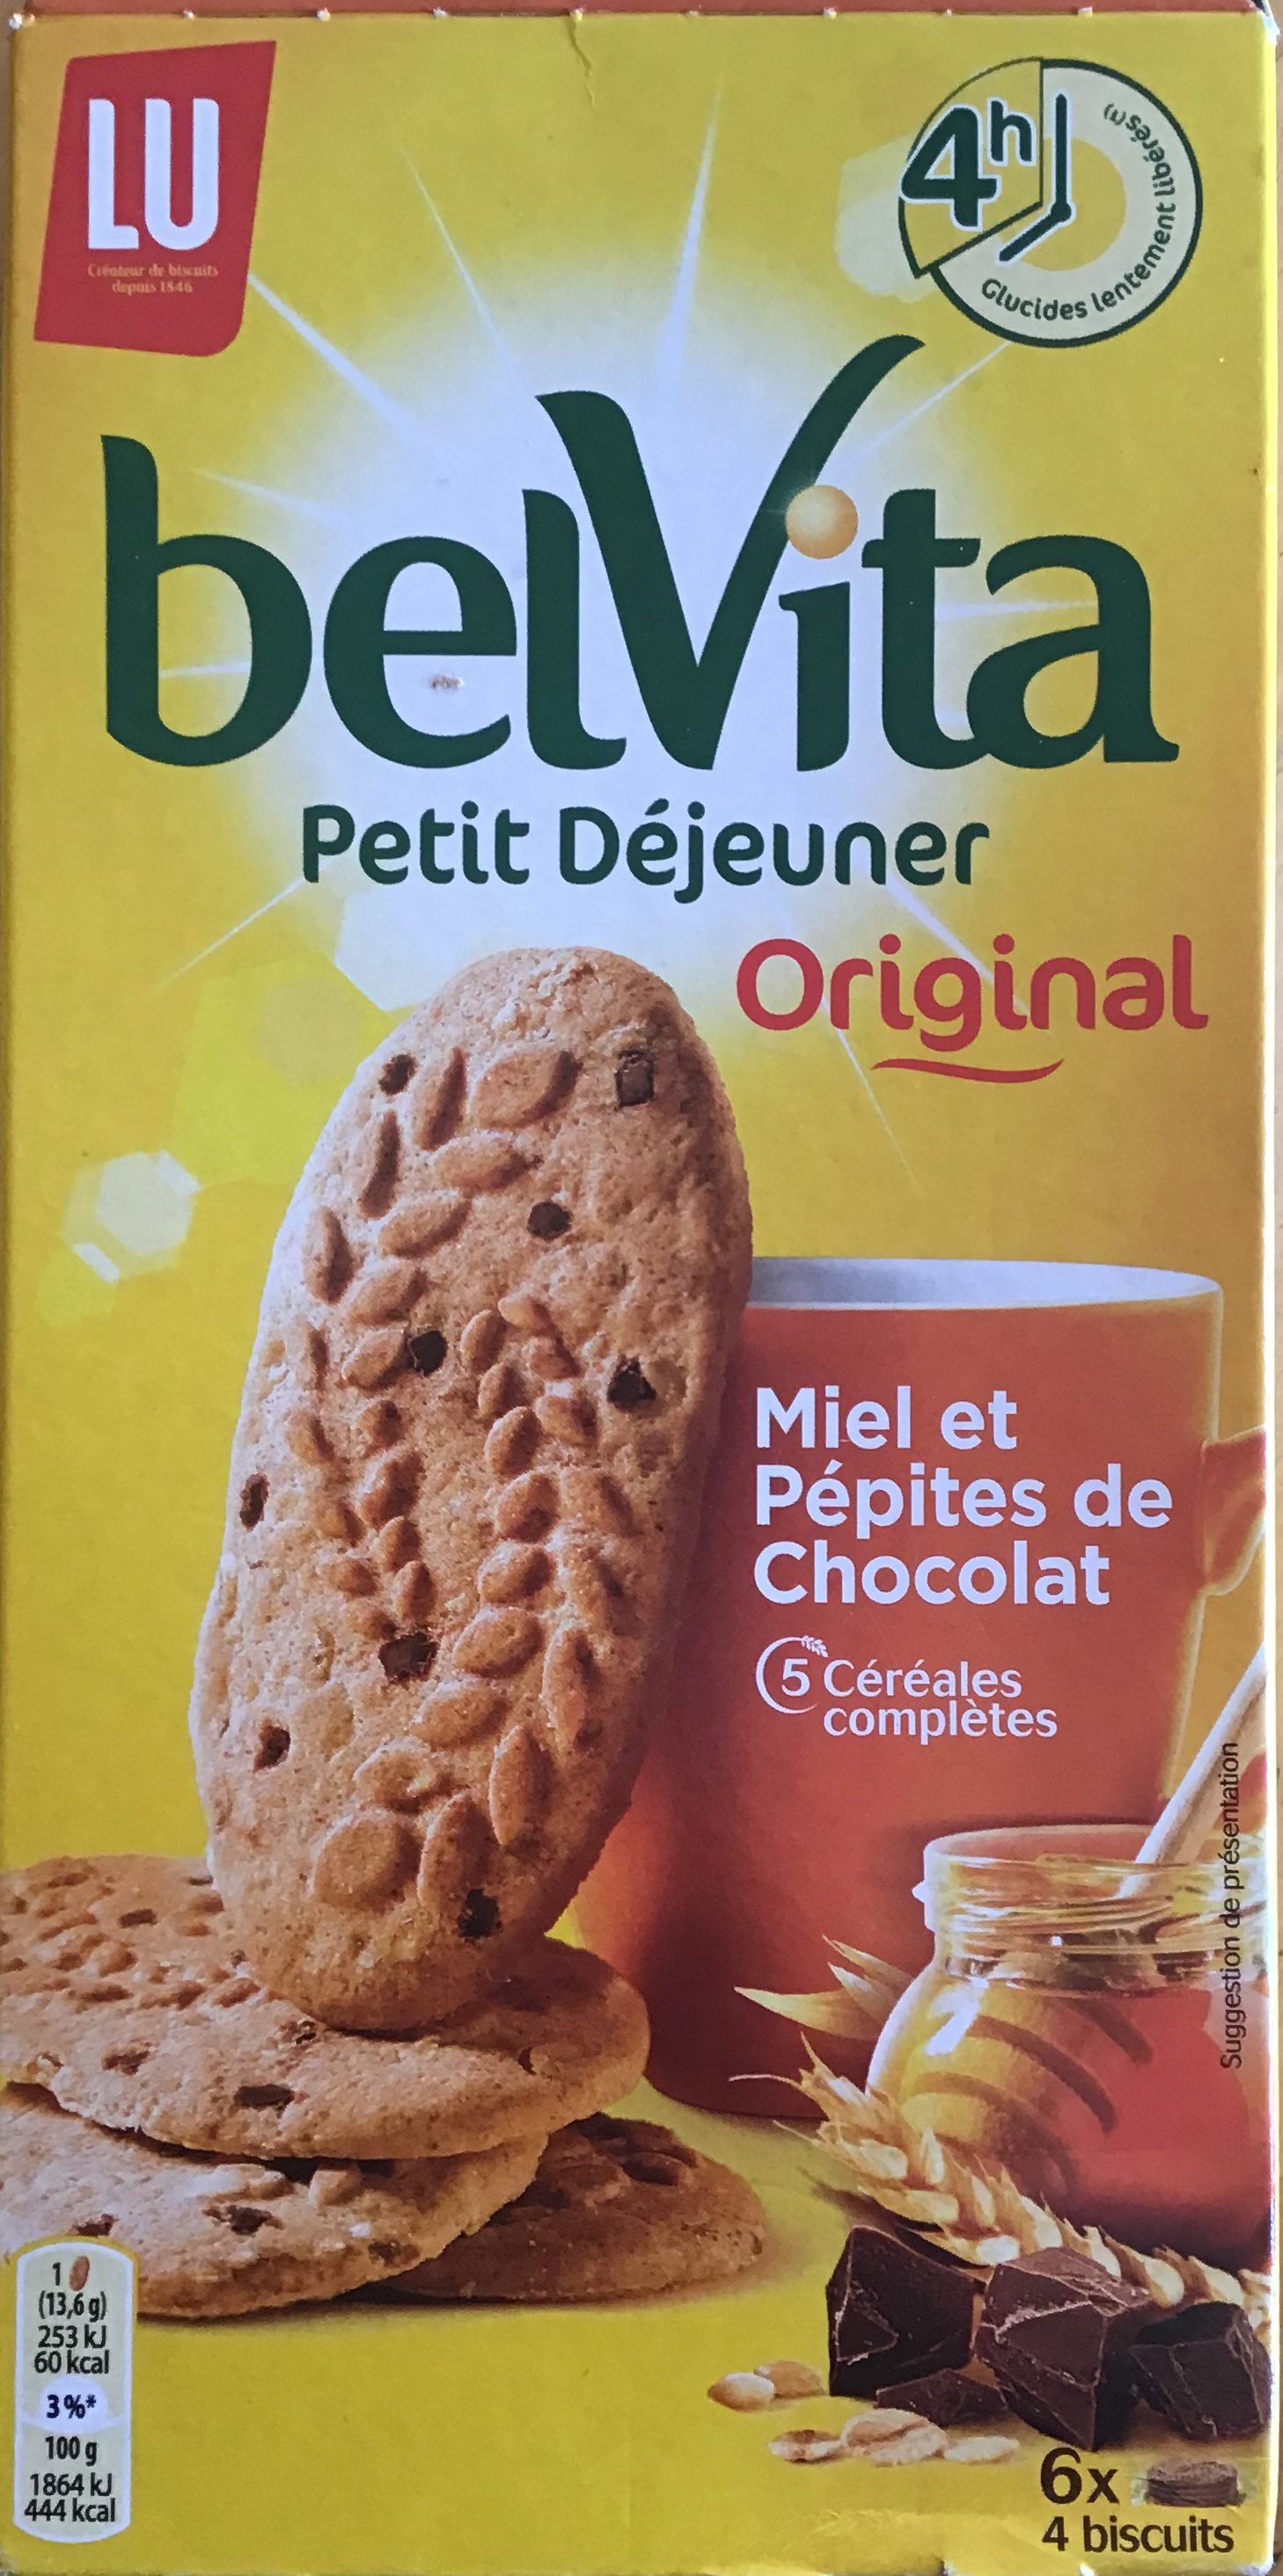 Miel et Pépites de chocolats - Product - fr